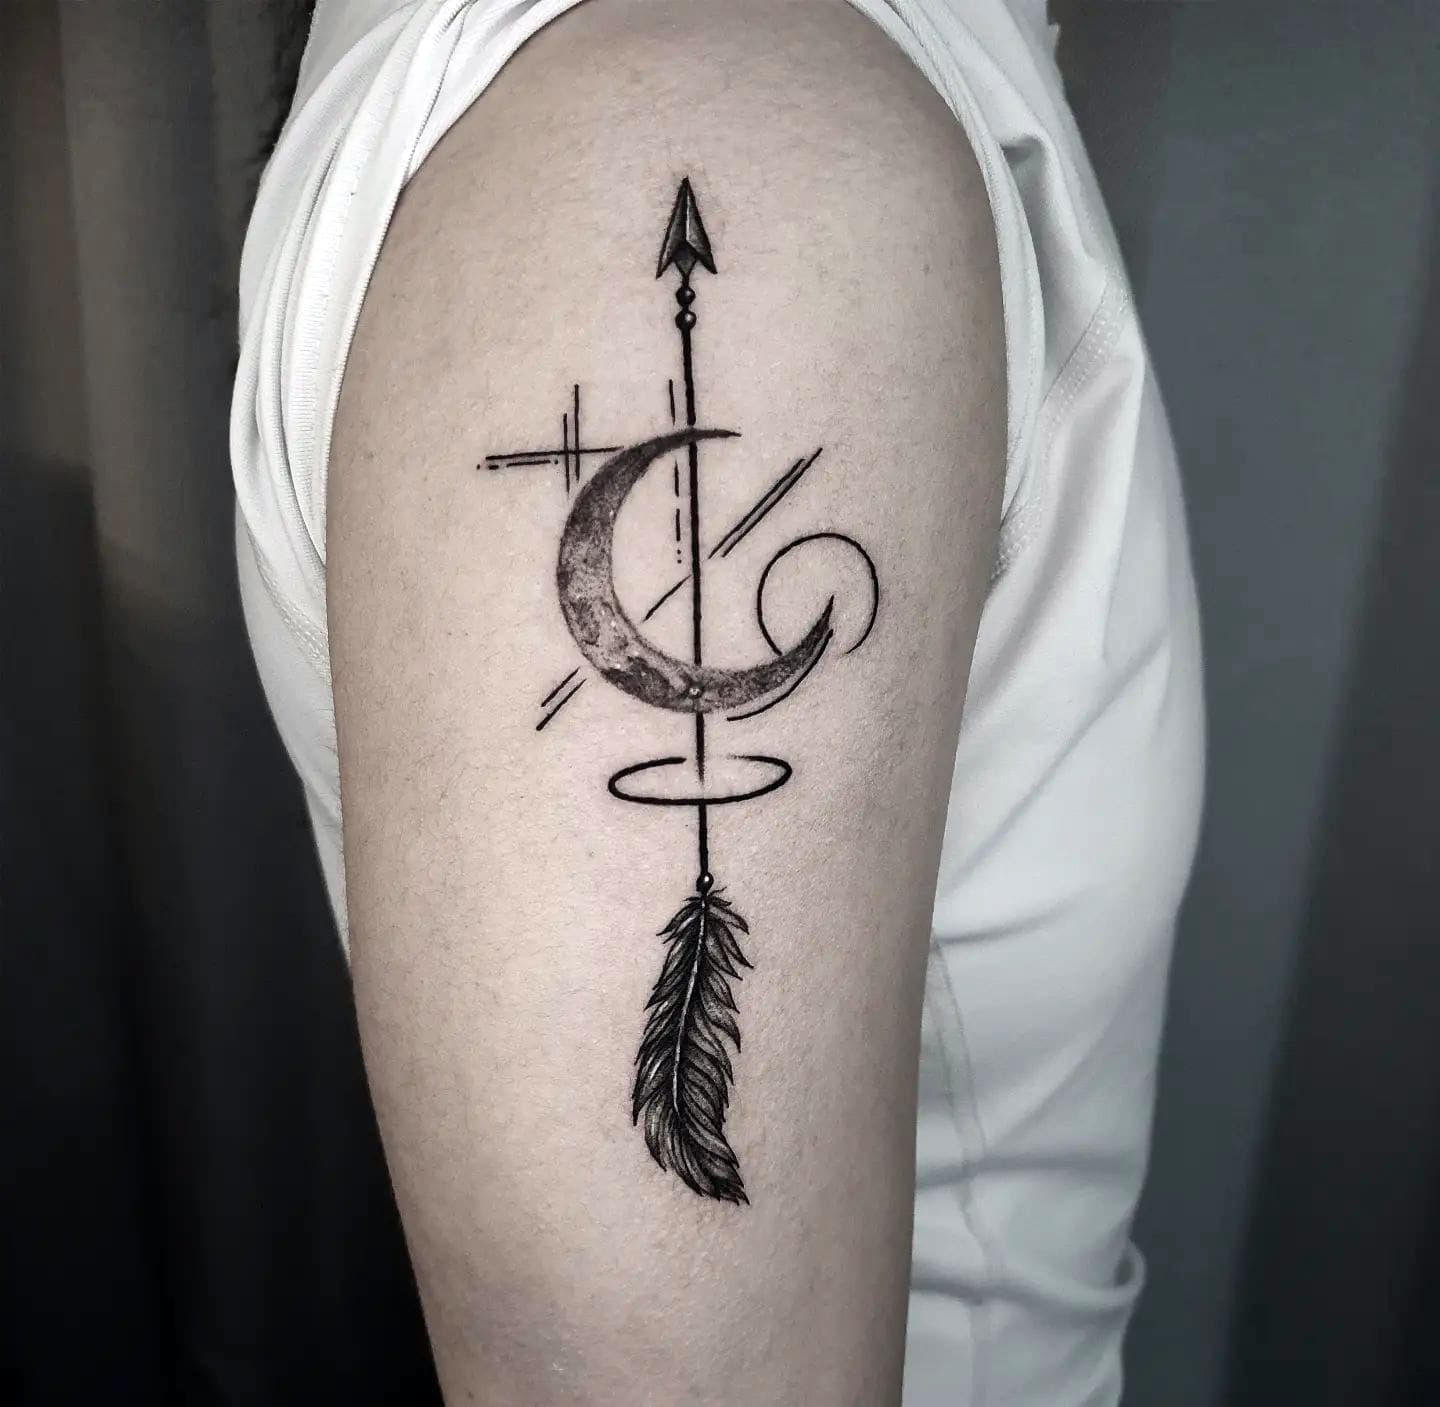 Tatuaje de flecha con inicial del nombre